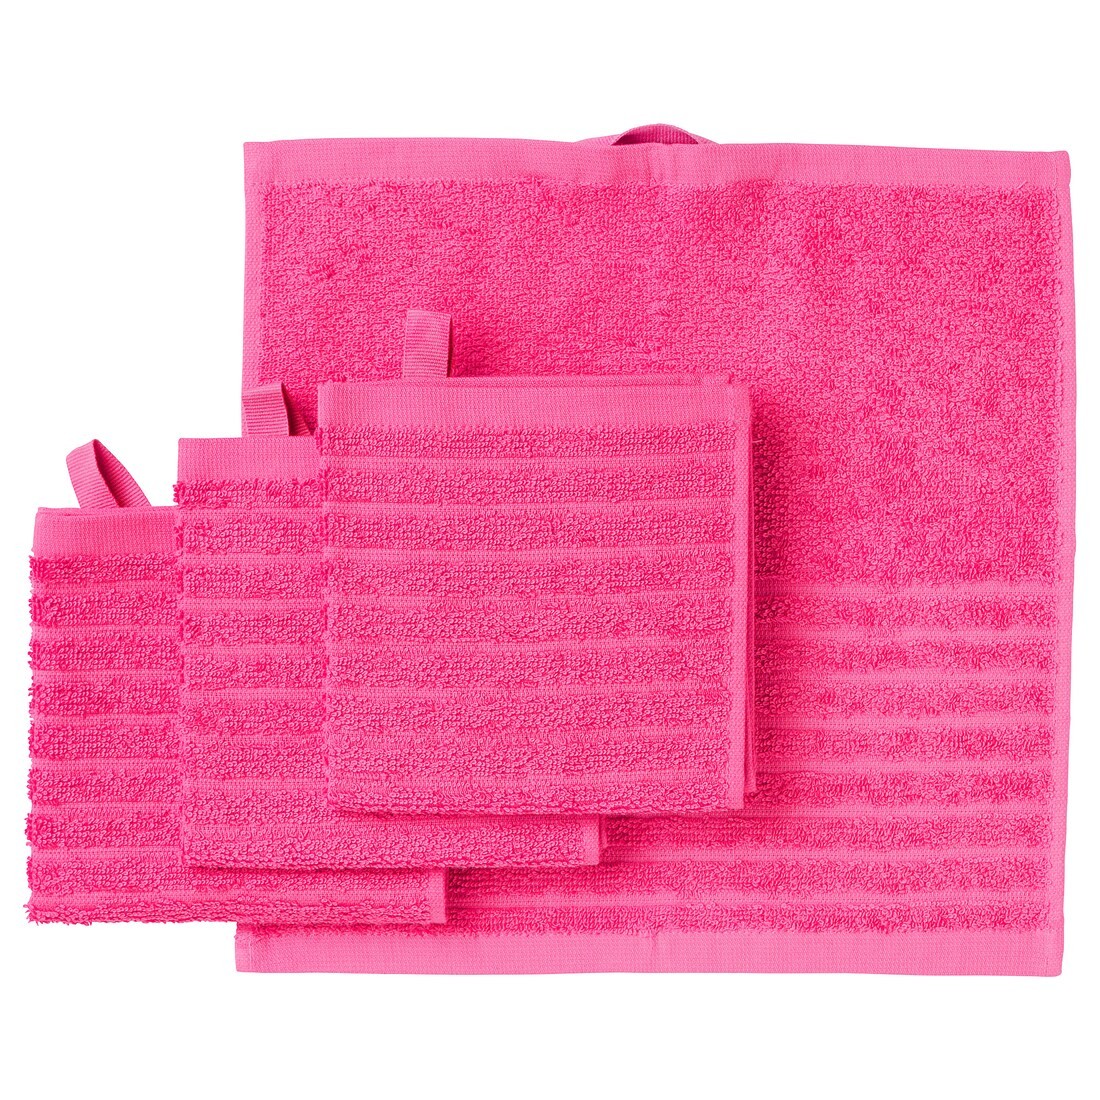 VÅGSJÖN Полотенце, розовый, 30x30 см